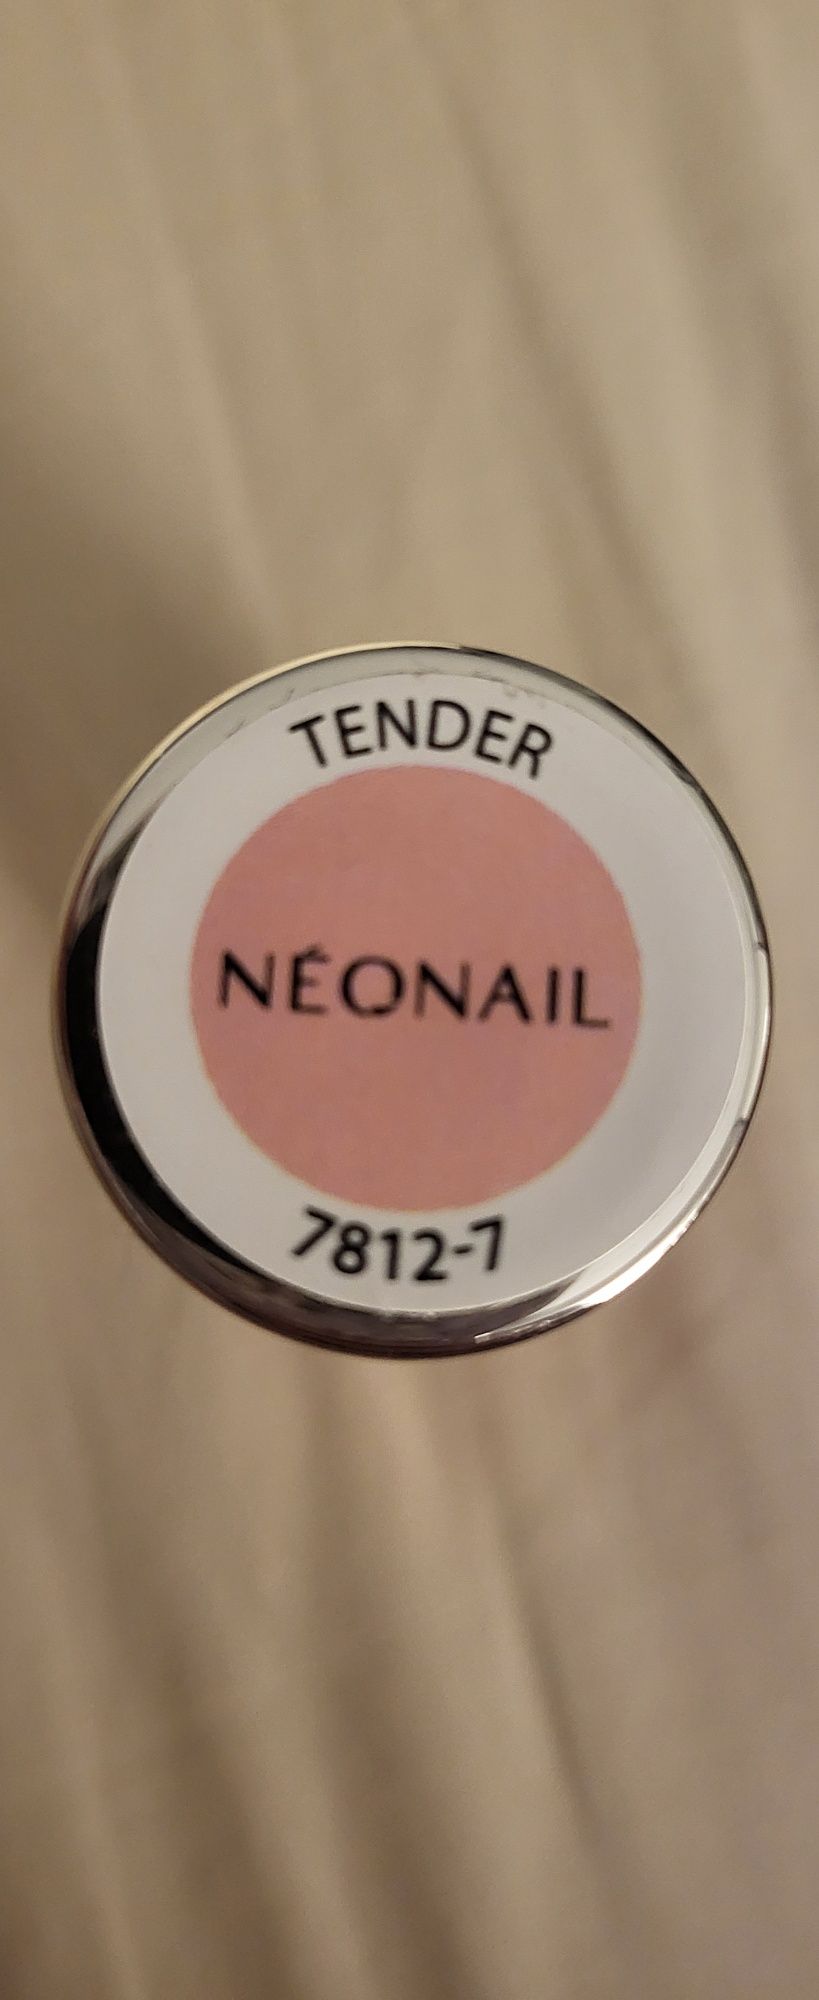 Neonail 3w1 lakier hybrydowy tender